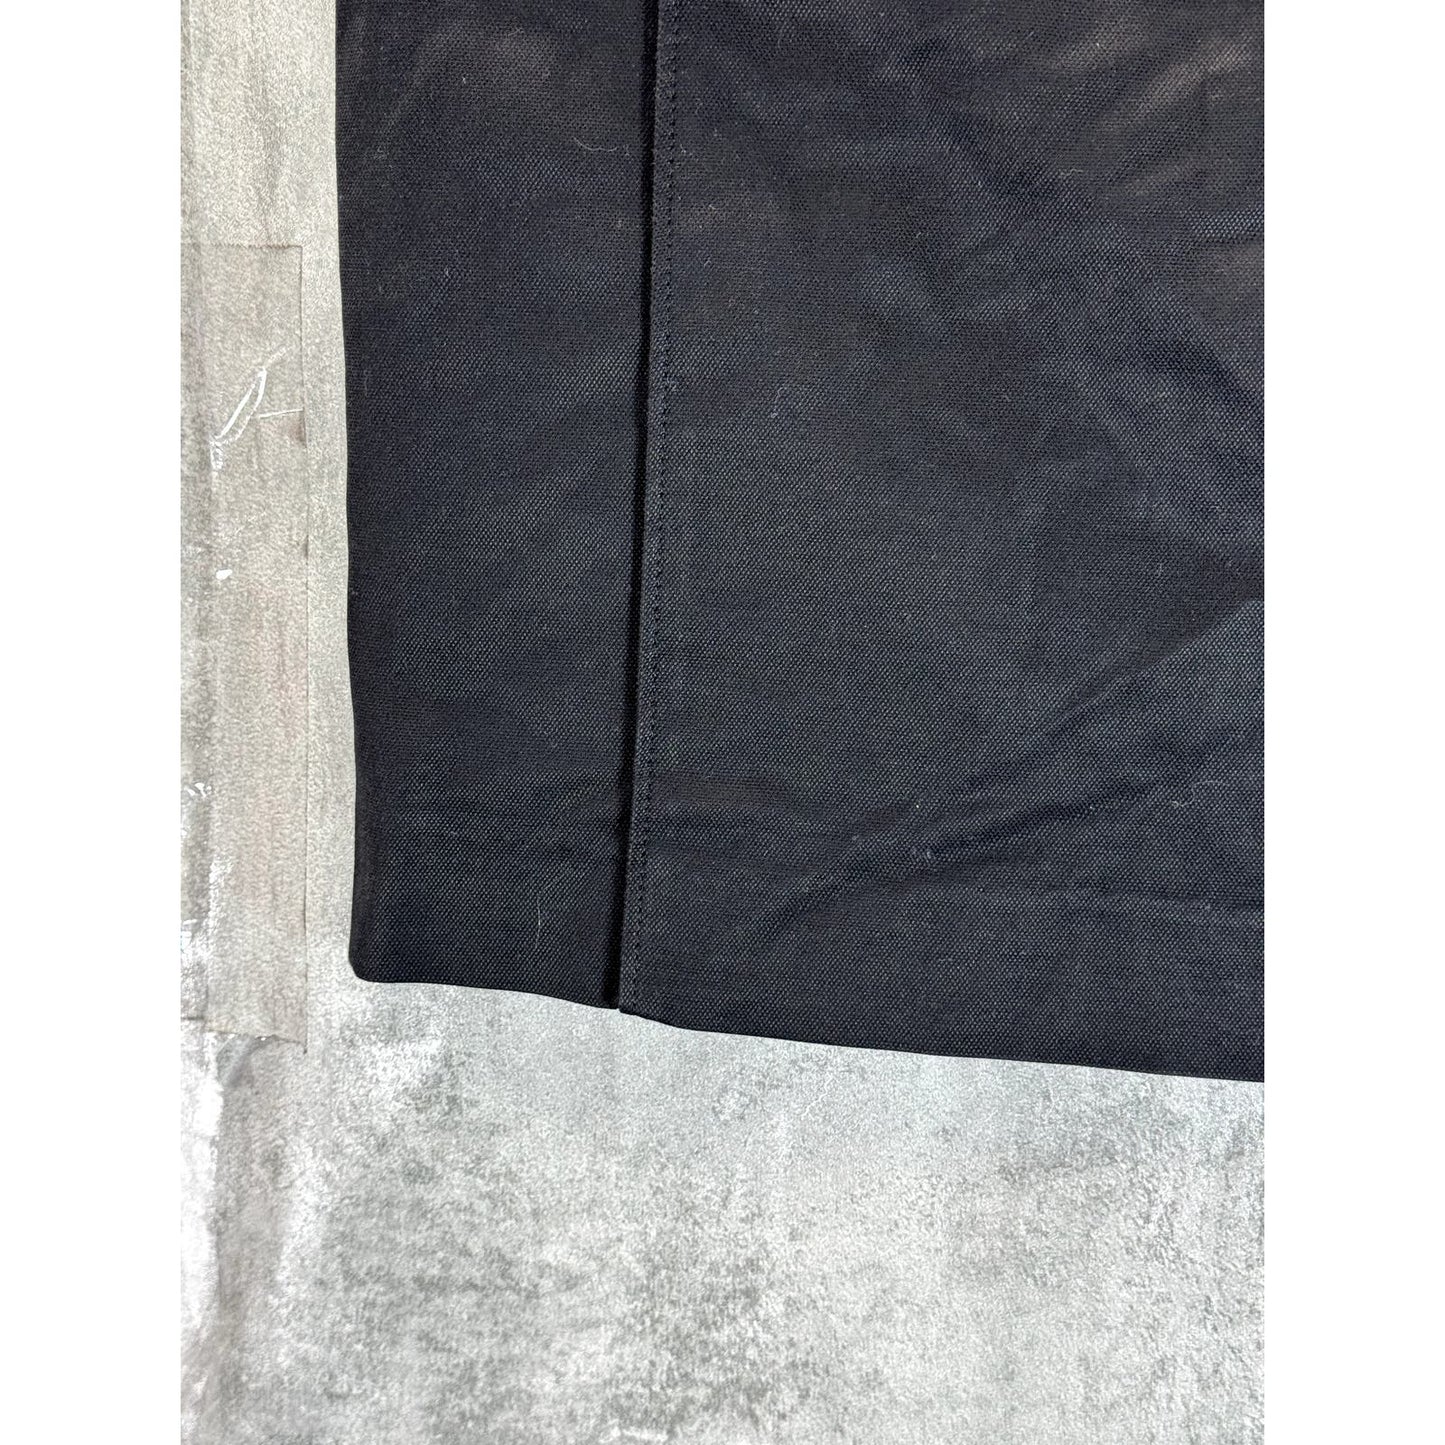 PATRIZIA PEPE Women's Black Solid Mini Pencil Skirt SZ 42(US 6)